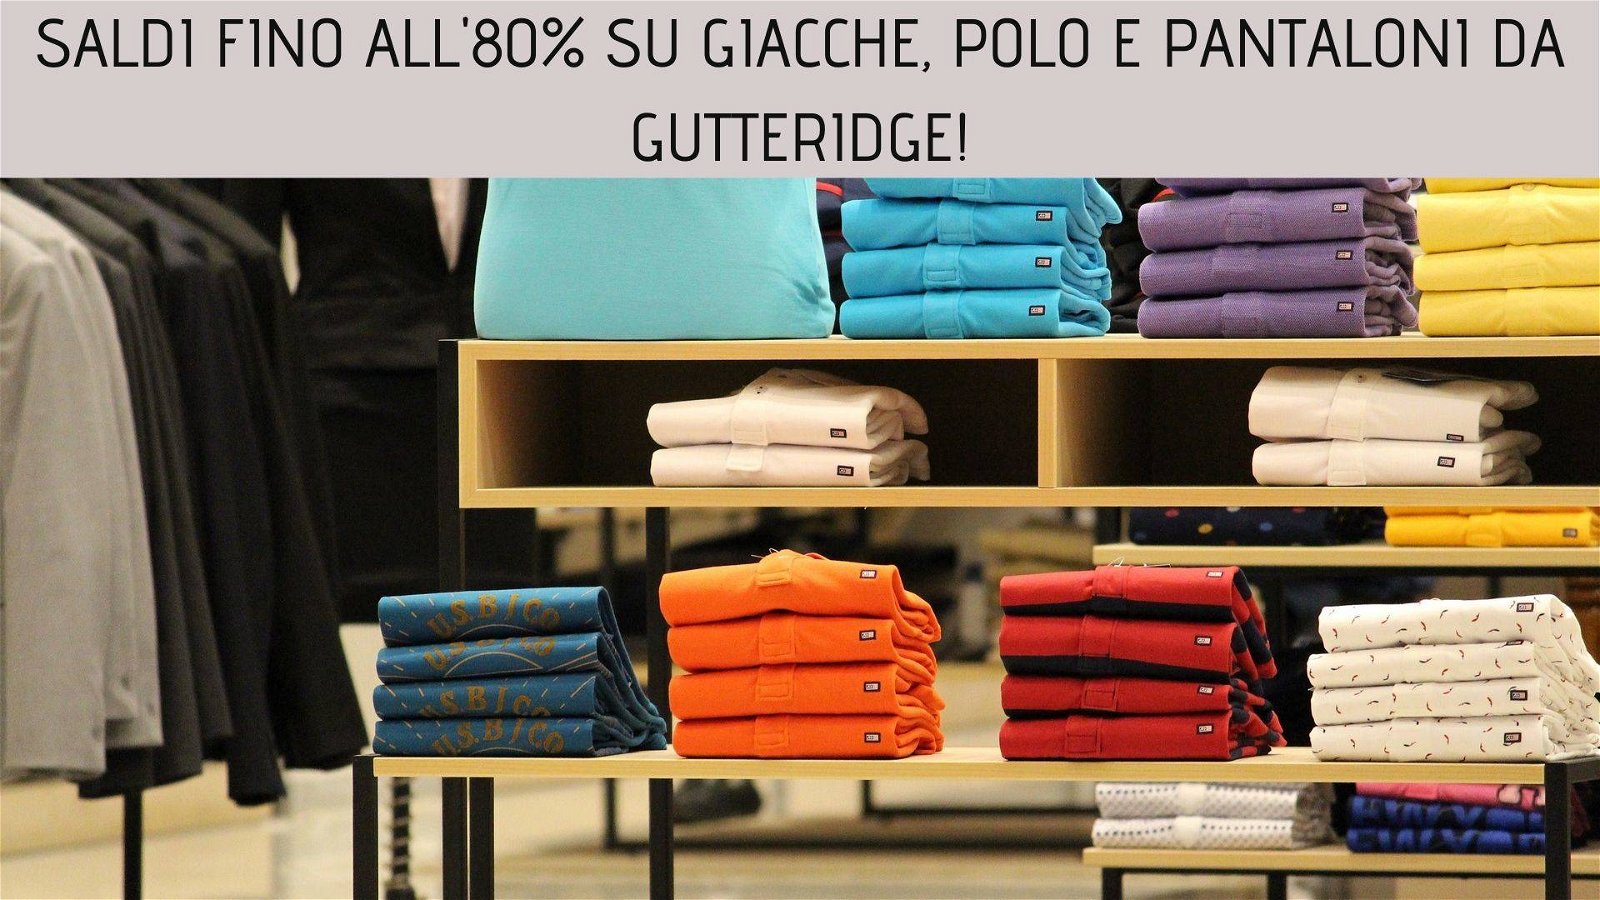 Immagine di Saldi fino all'80% su giacche, polo e pantaloni da Gutteridge!